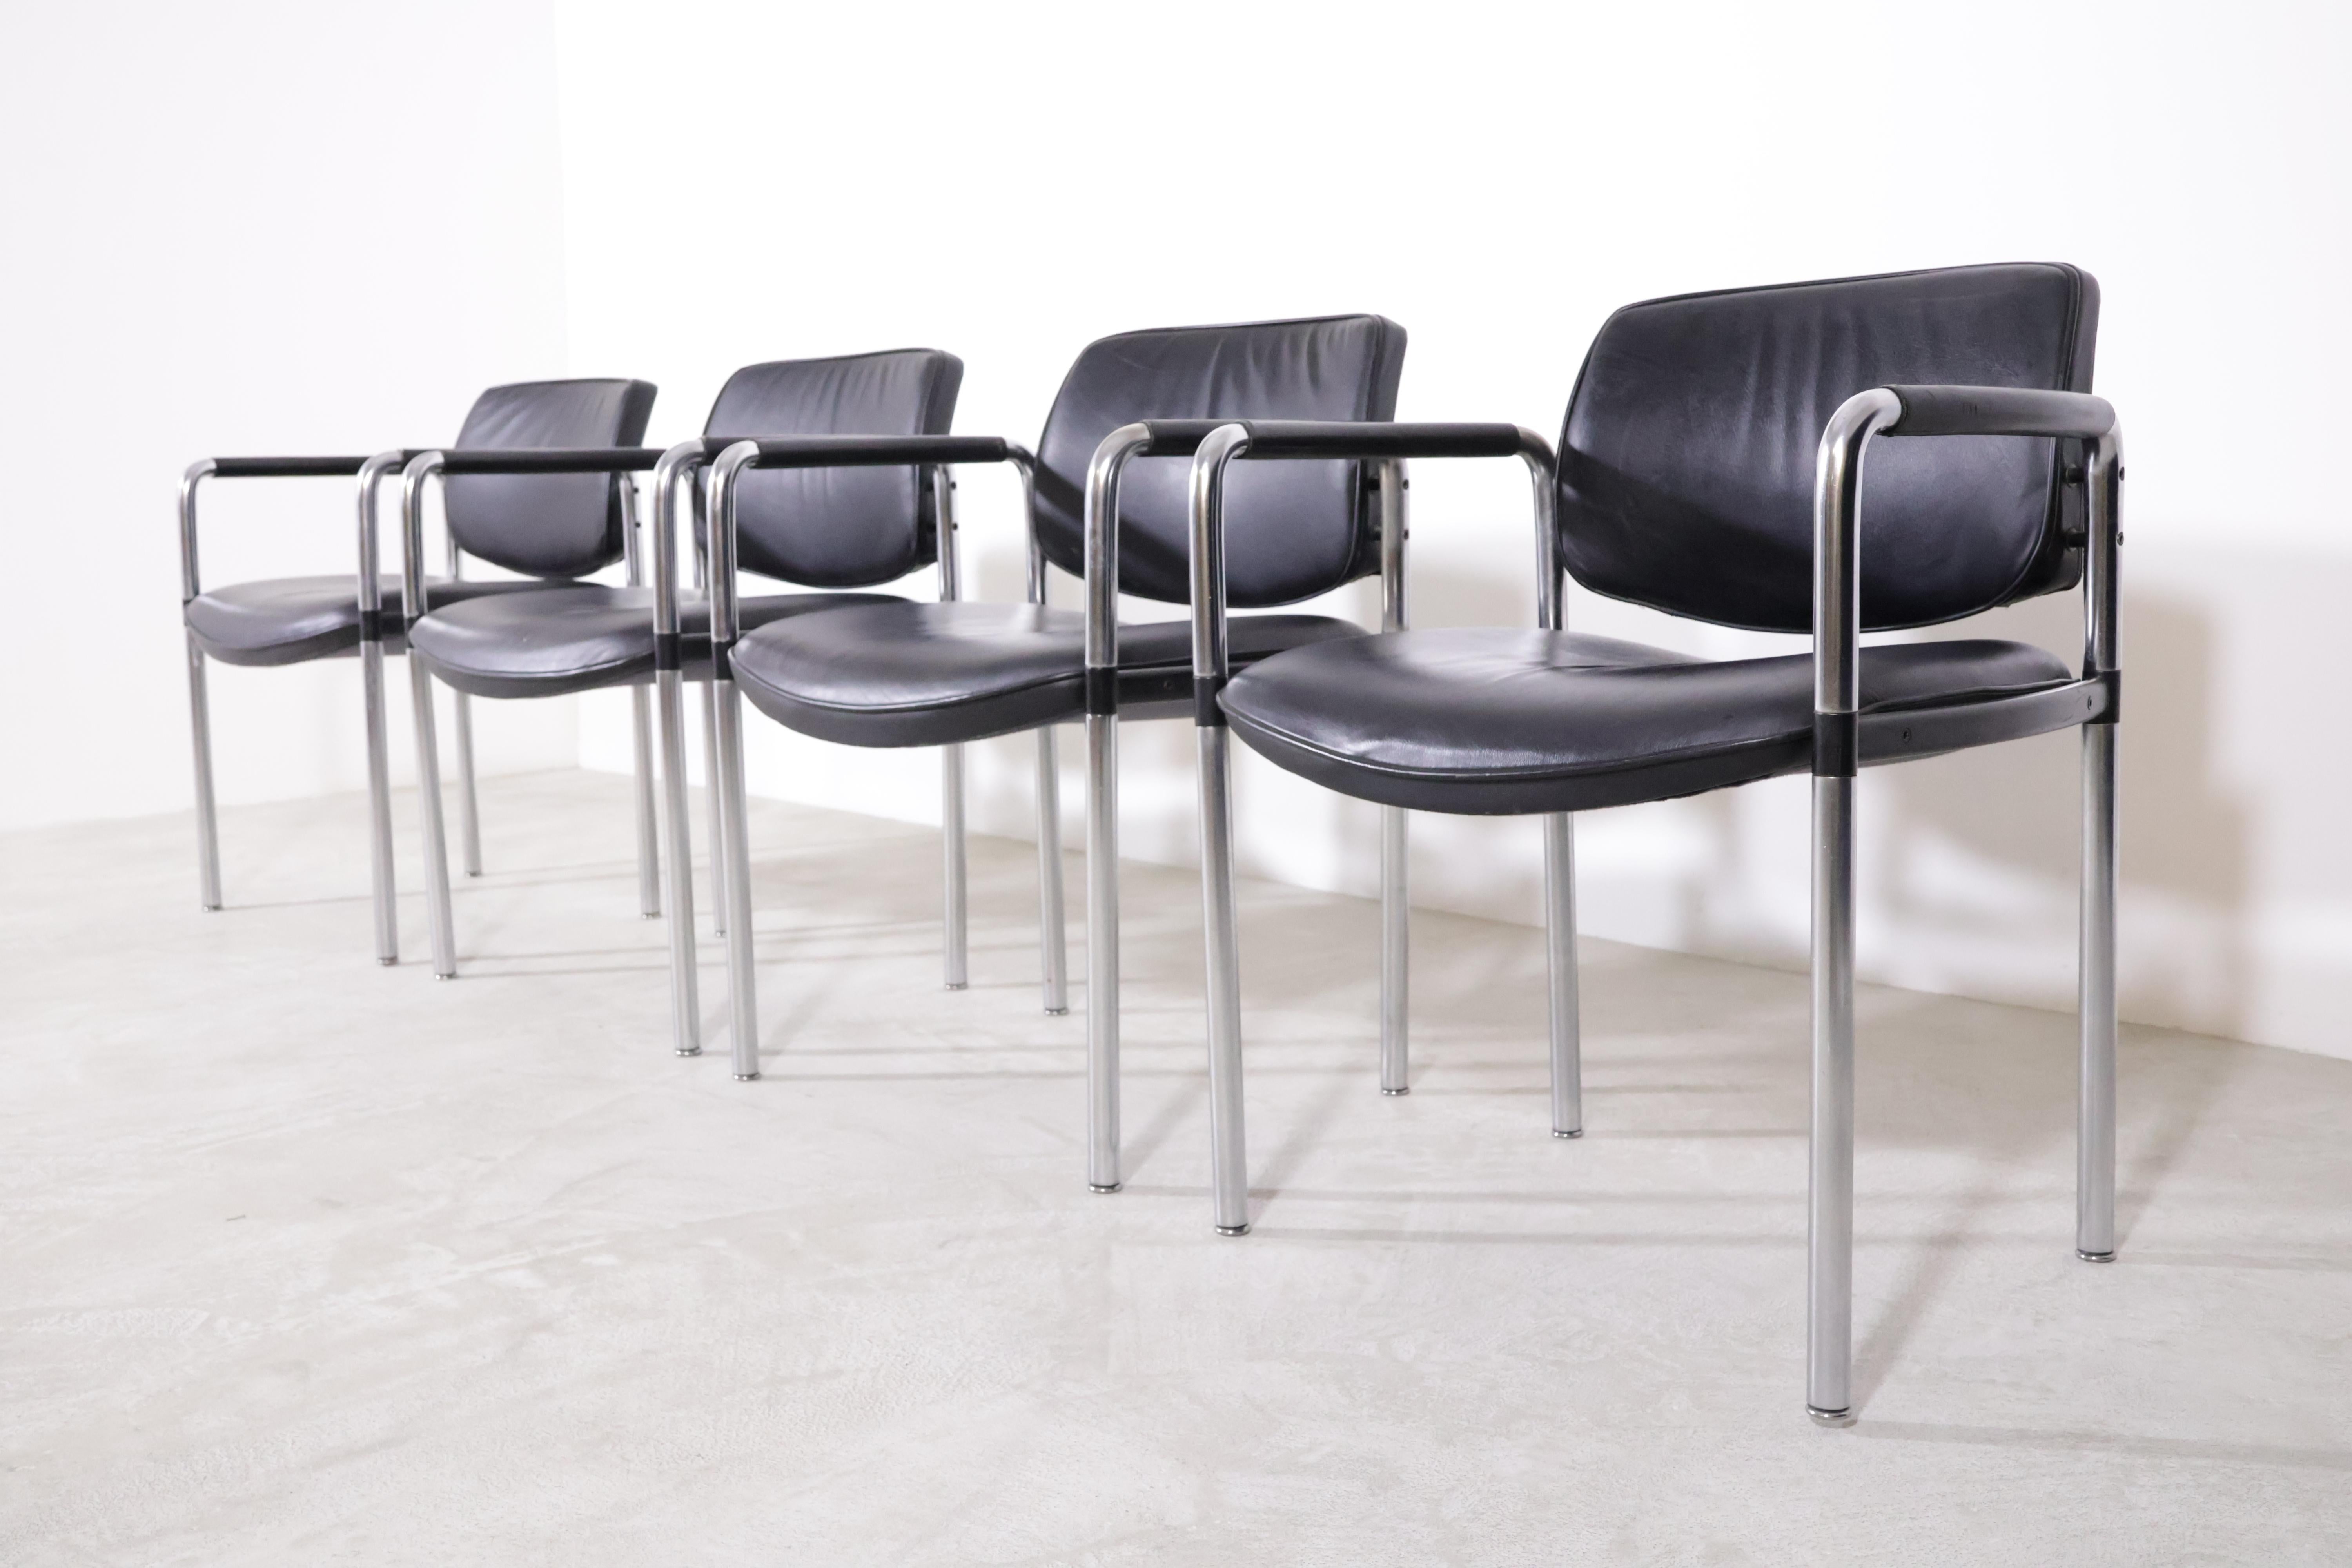 Diese Konferenzstühle von Jorgen Kastholm für Kusch & Co. sind in hervorragendem Originalzustand!

Der Stuhl ist ein seltener Konferenz-/Esszimmerstuhl, der sich durch seine extrem hohe Qualität auszeichnet und auch in seinem Design einzigartig ist.